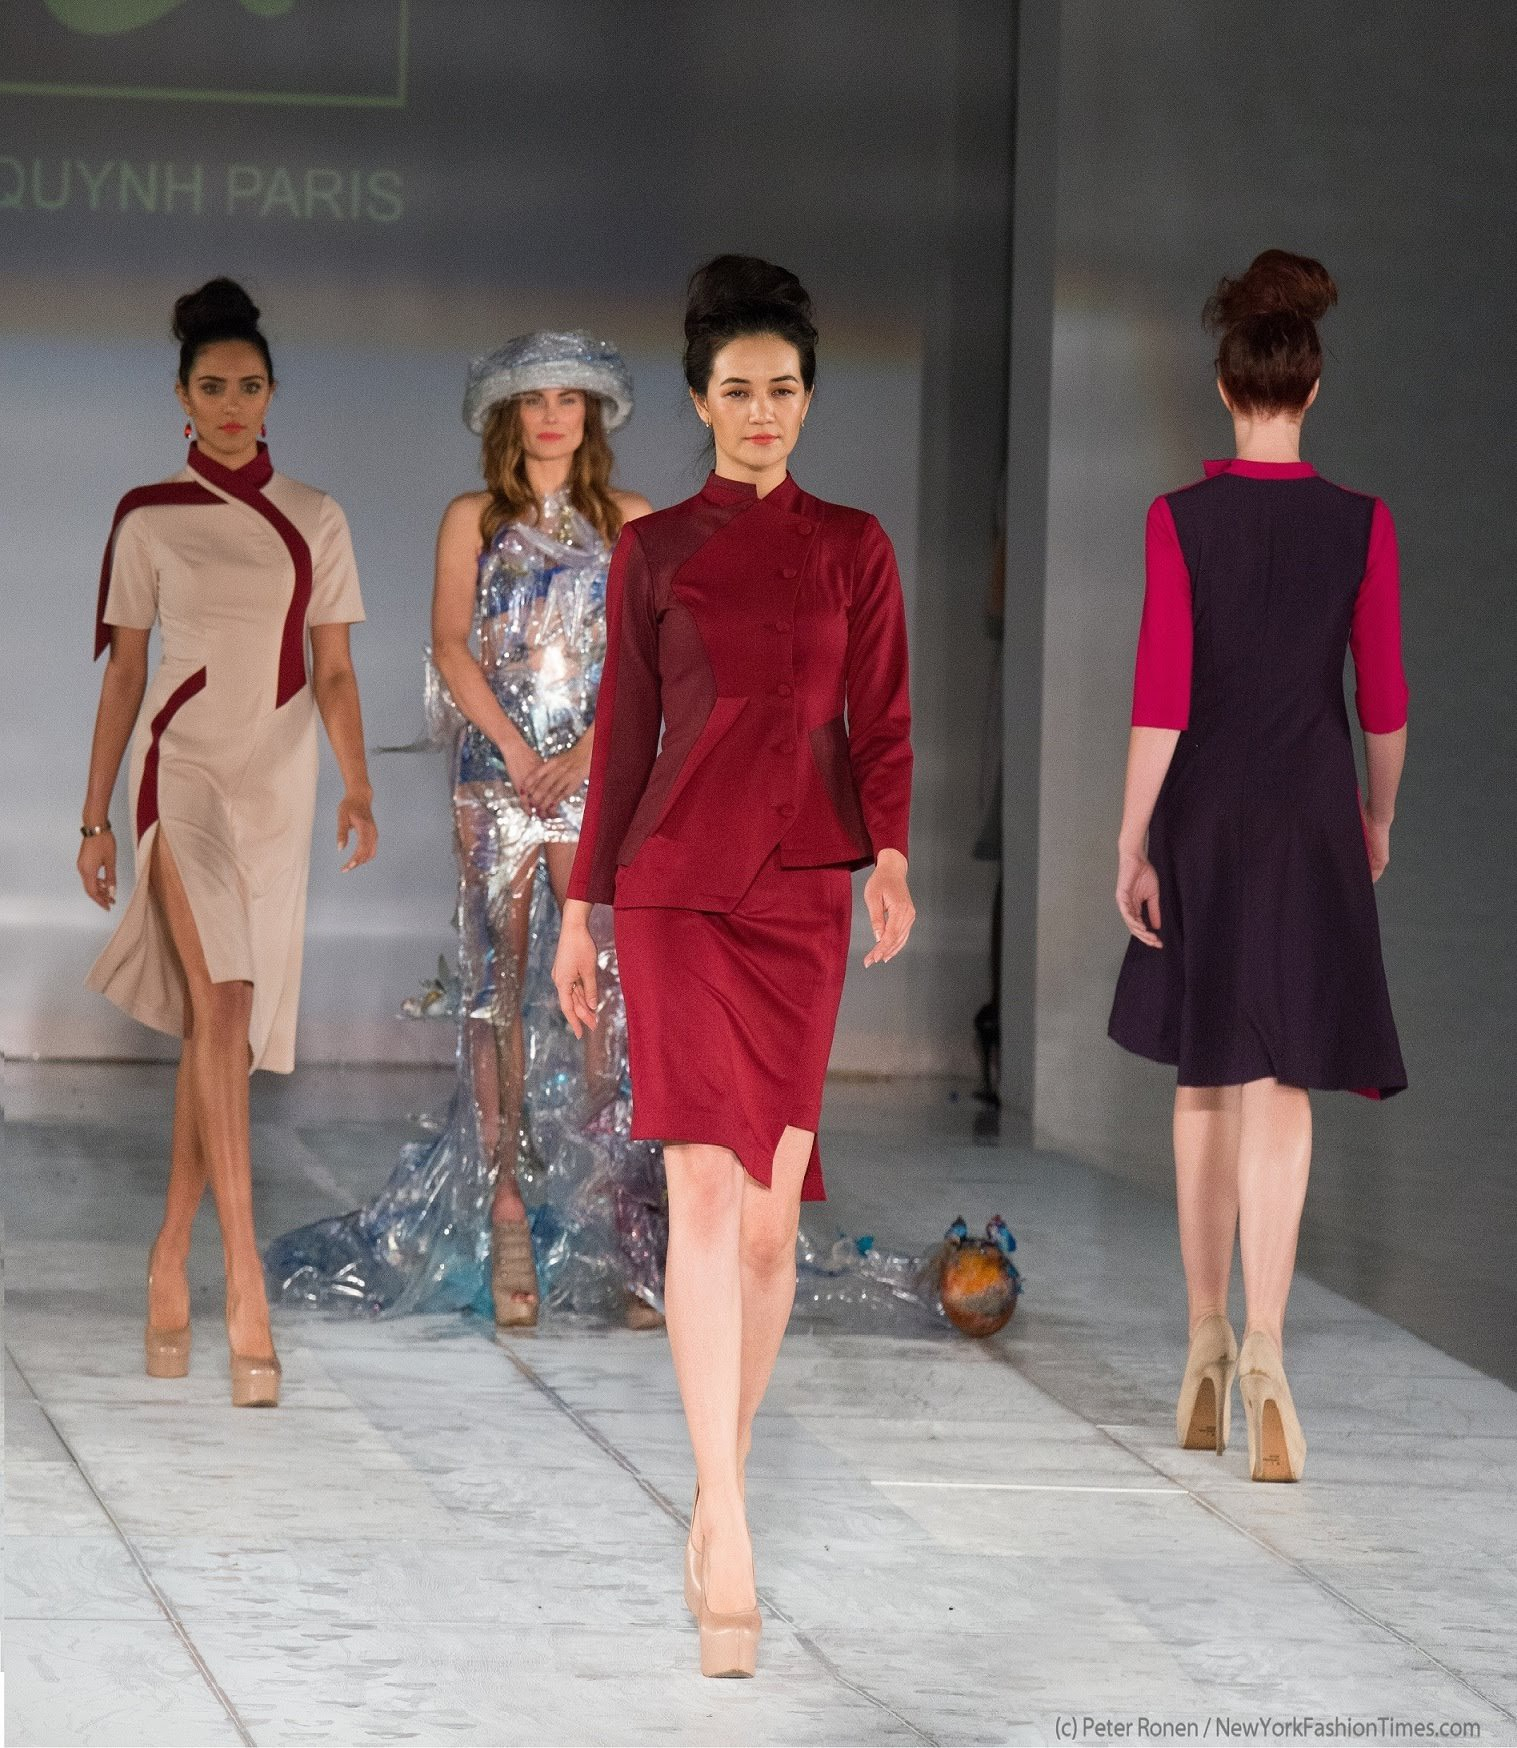 Một số mẫu thiết kế sử dụng vải Organic thân thiện với môi trường của NTK Quỳnh Paris được trình diễn tại sàn diễn thời trang quốc tế.